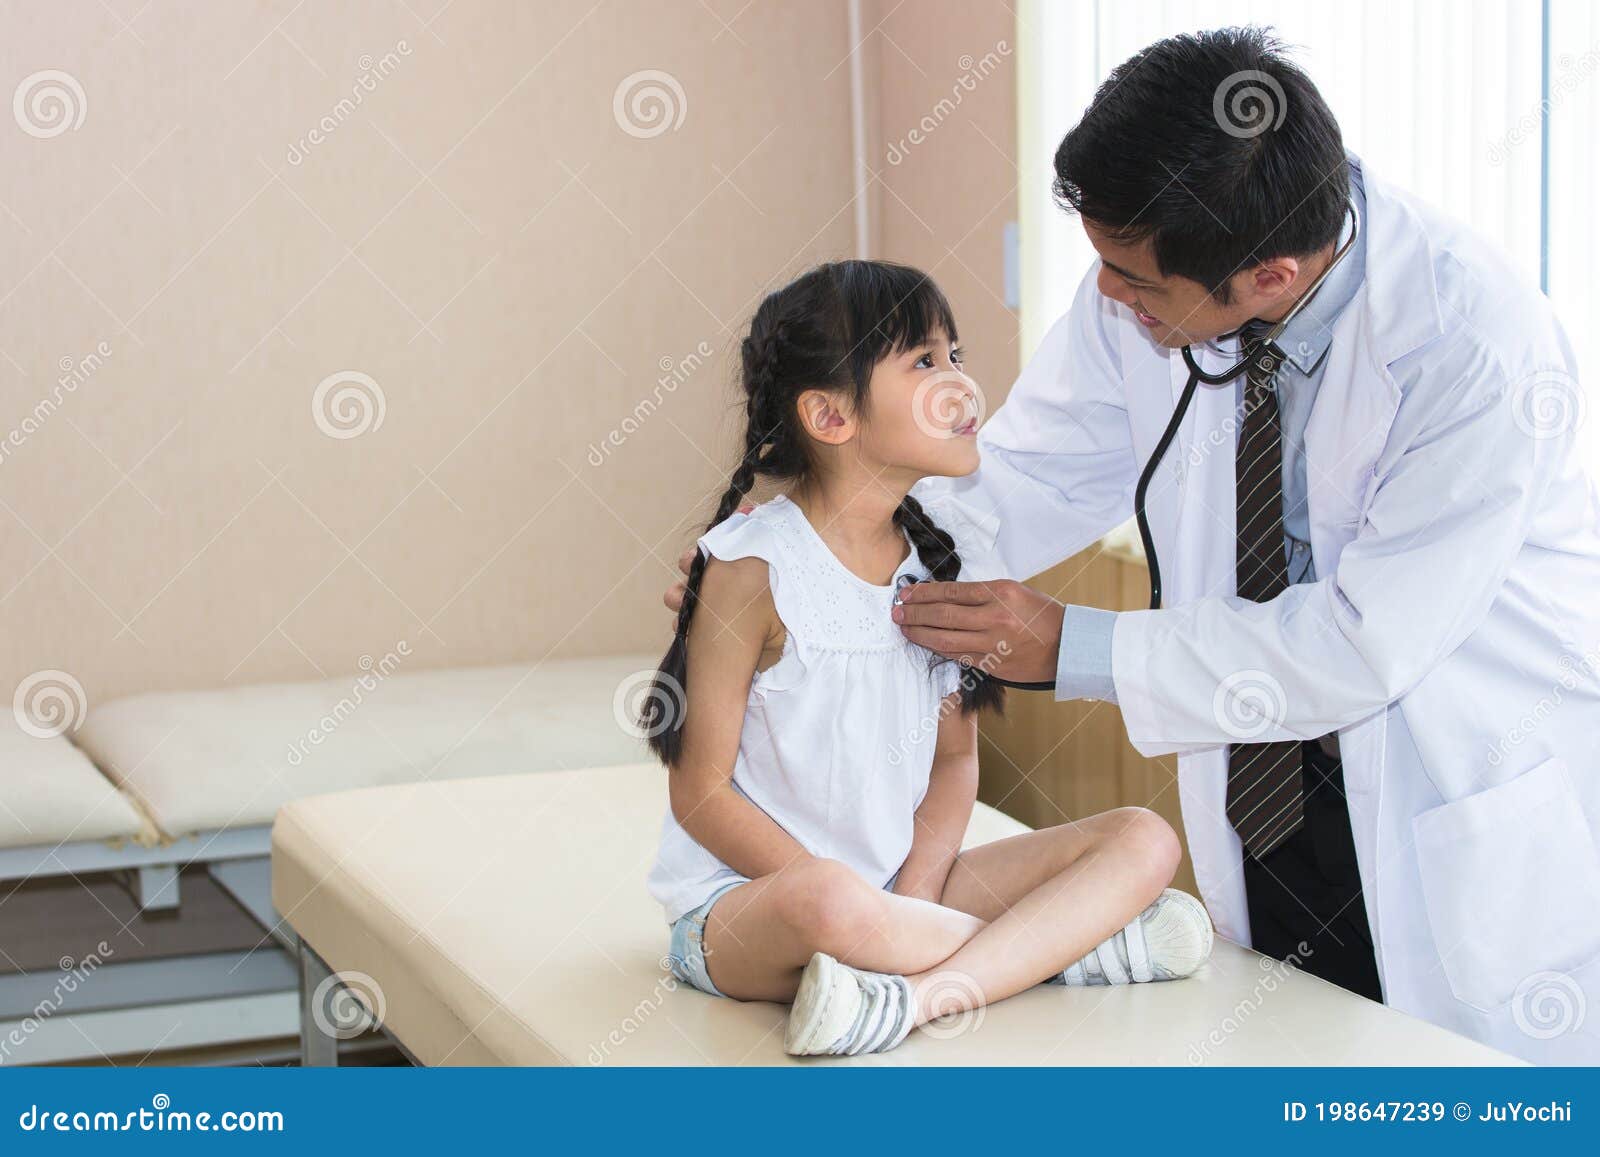 Exam doctor. Children Doctor examination детей. Медицинский осмотр девочек. Японский медосмотр девочек. Осмотр девочек в Японии.